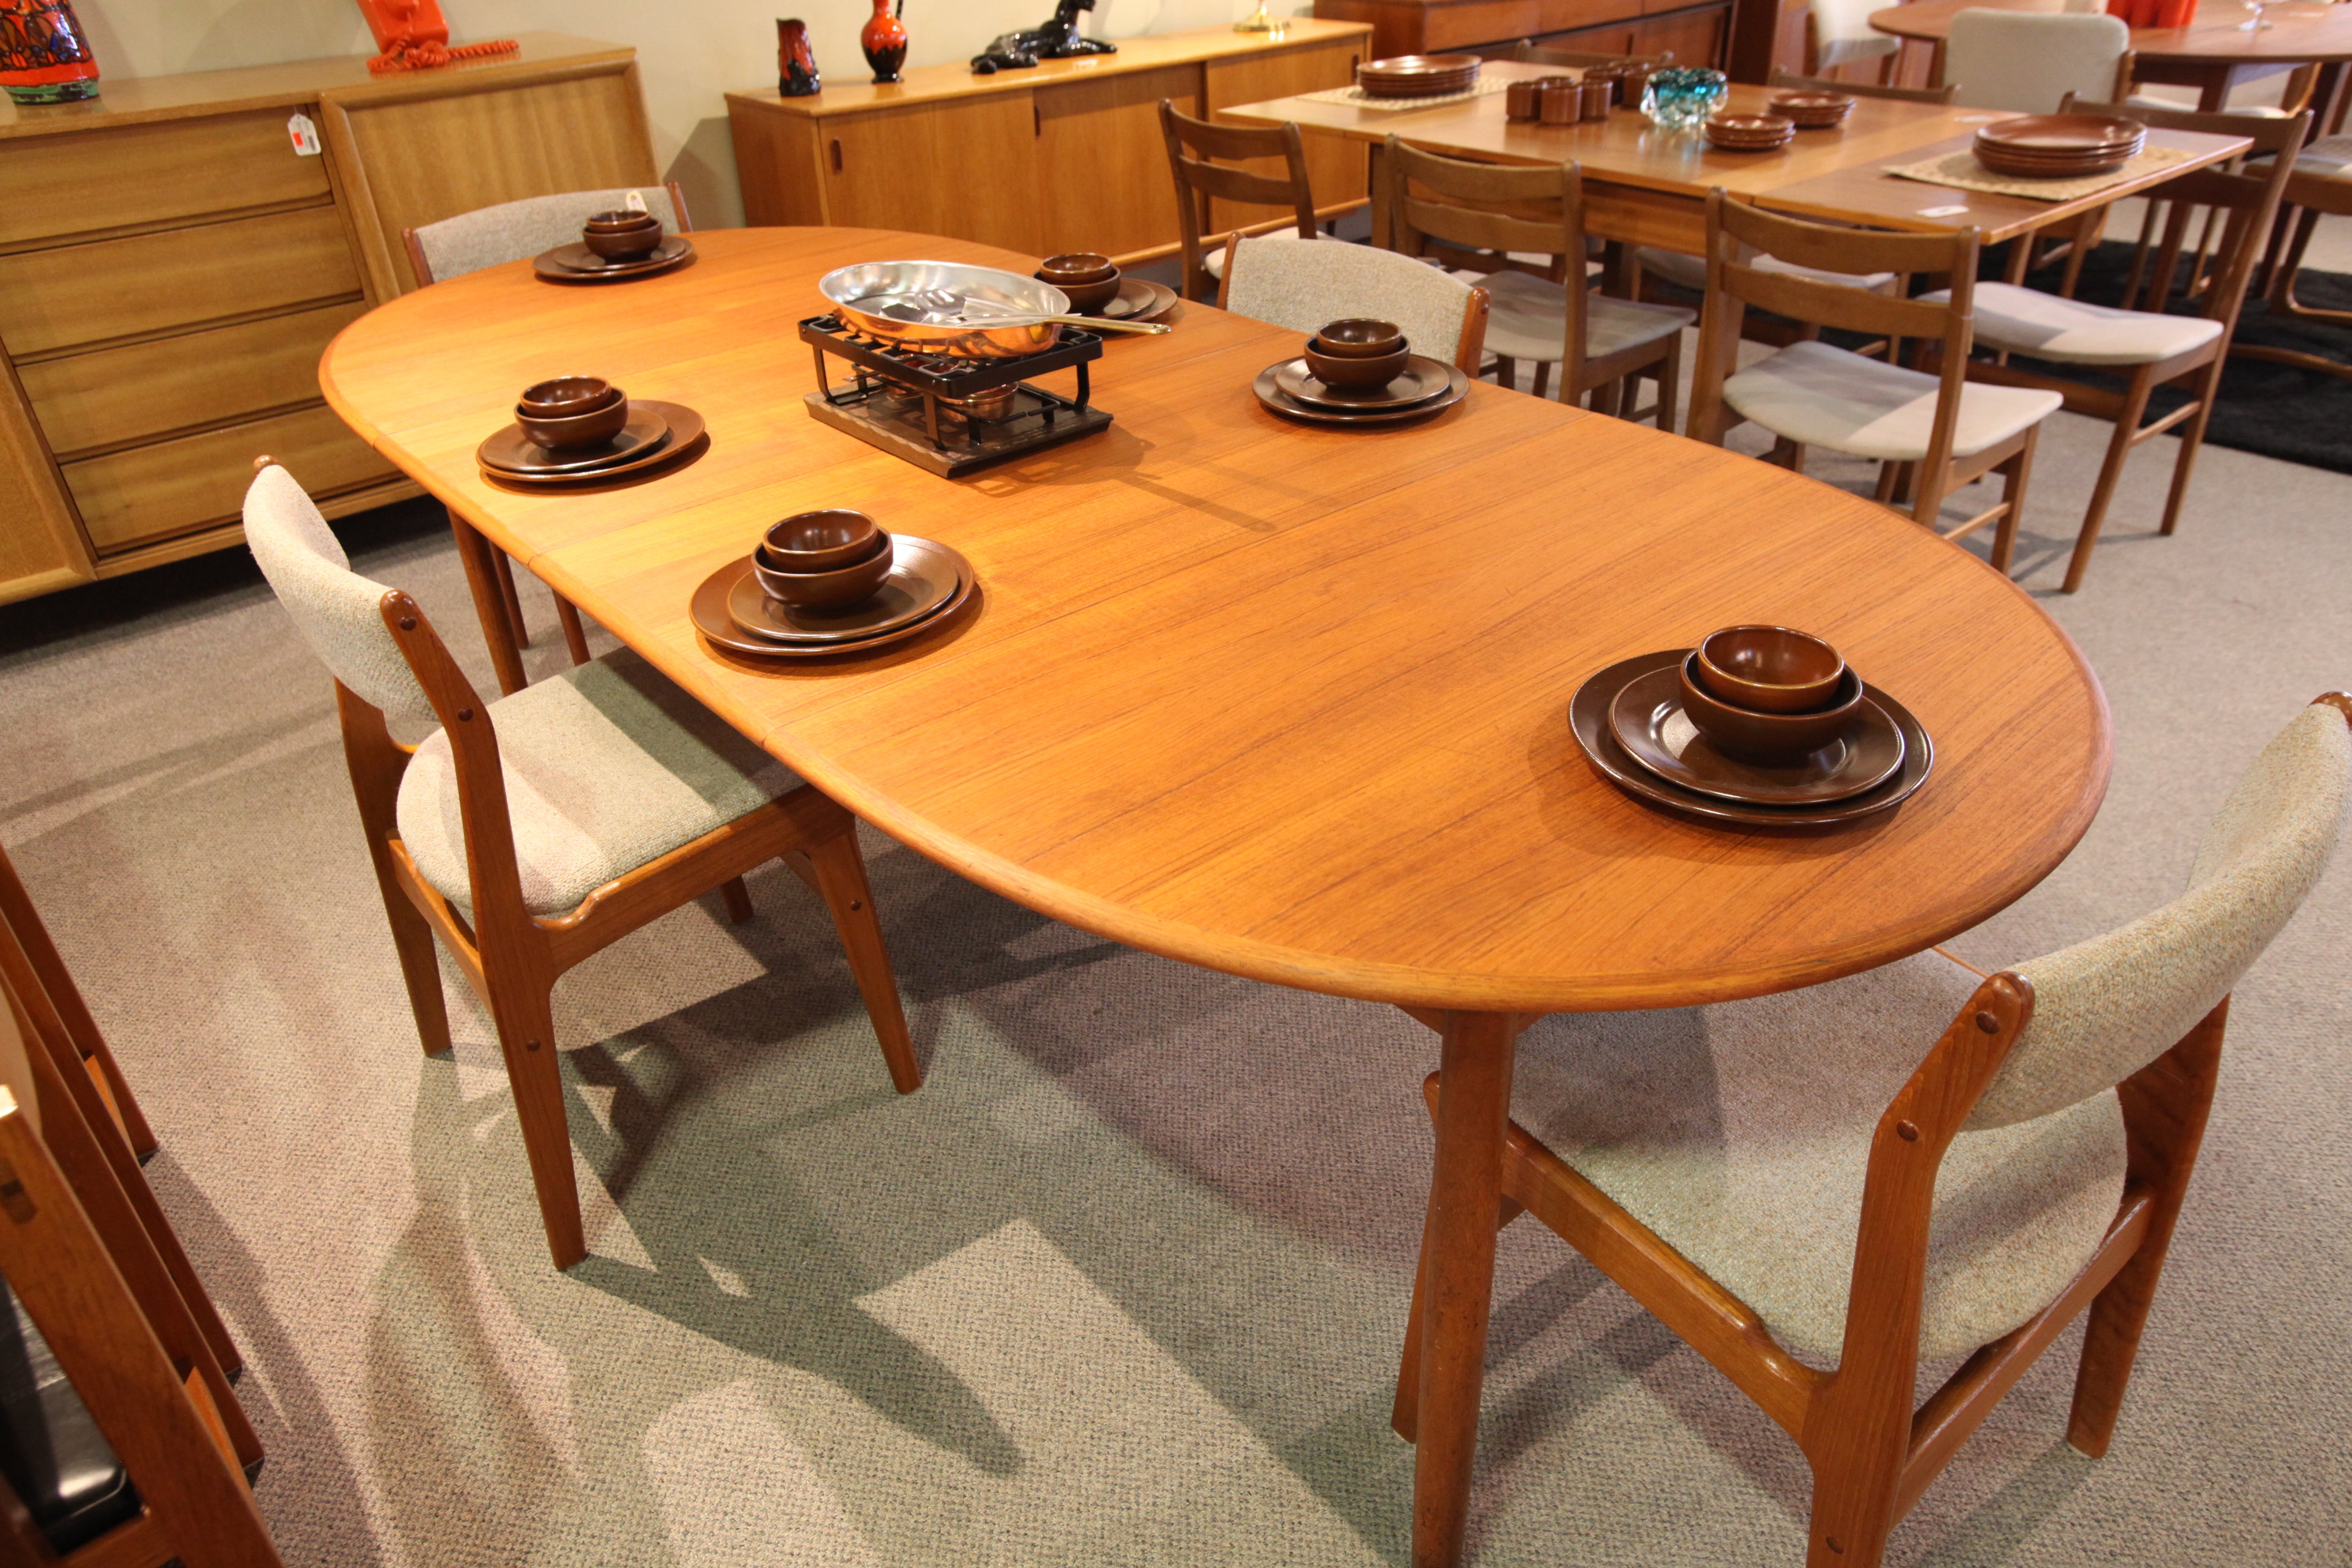 Vintage Mid Century Danish Teak Dining Table w/2 Leafs (98"x41.5") (59"x41.5")